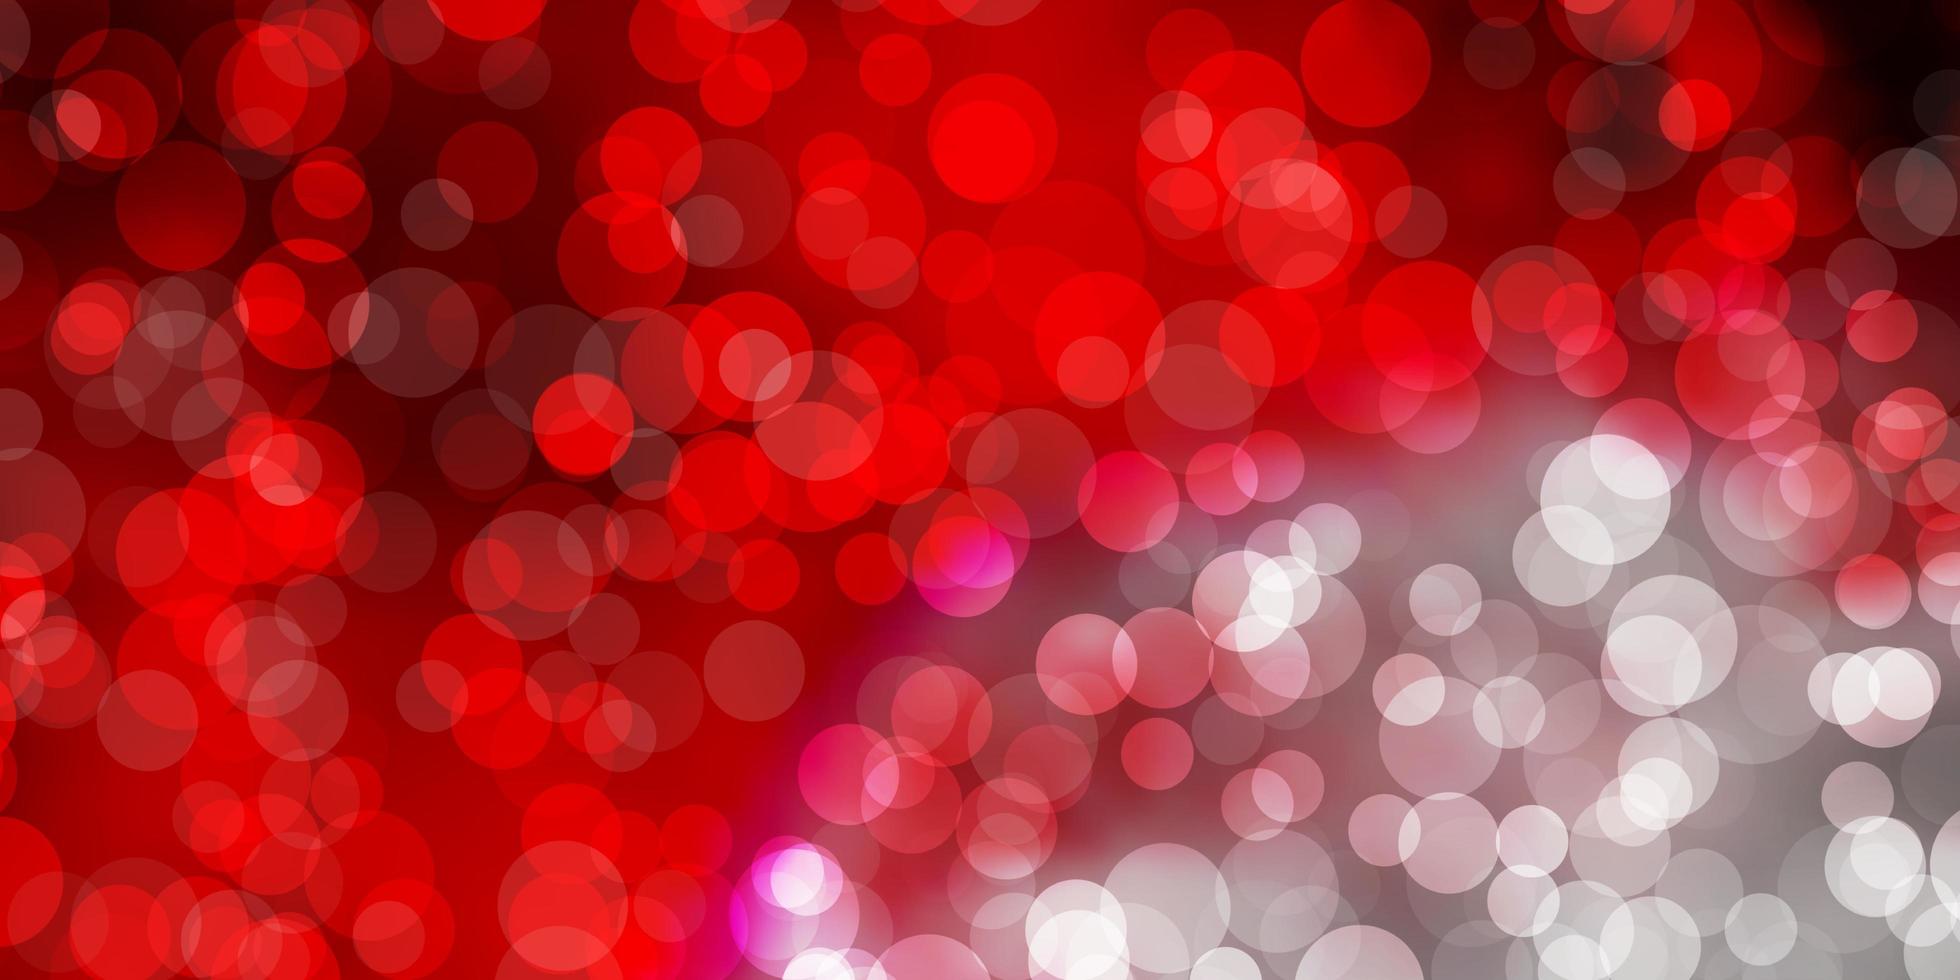 fond de vecteur rouge clair avec illustration abstraite de bulles avec des taches colorées dans le modèle de style nature pour les rideaux de papiers peints